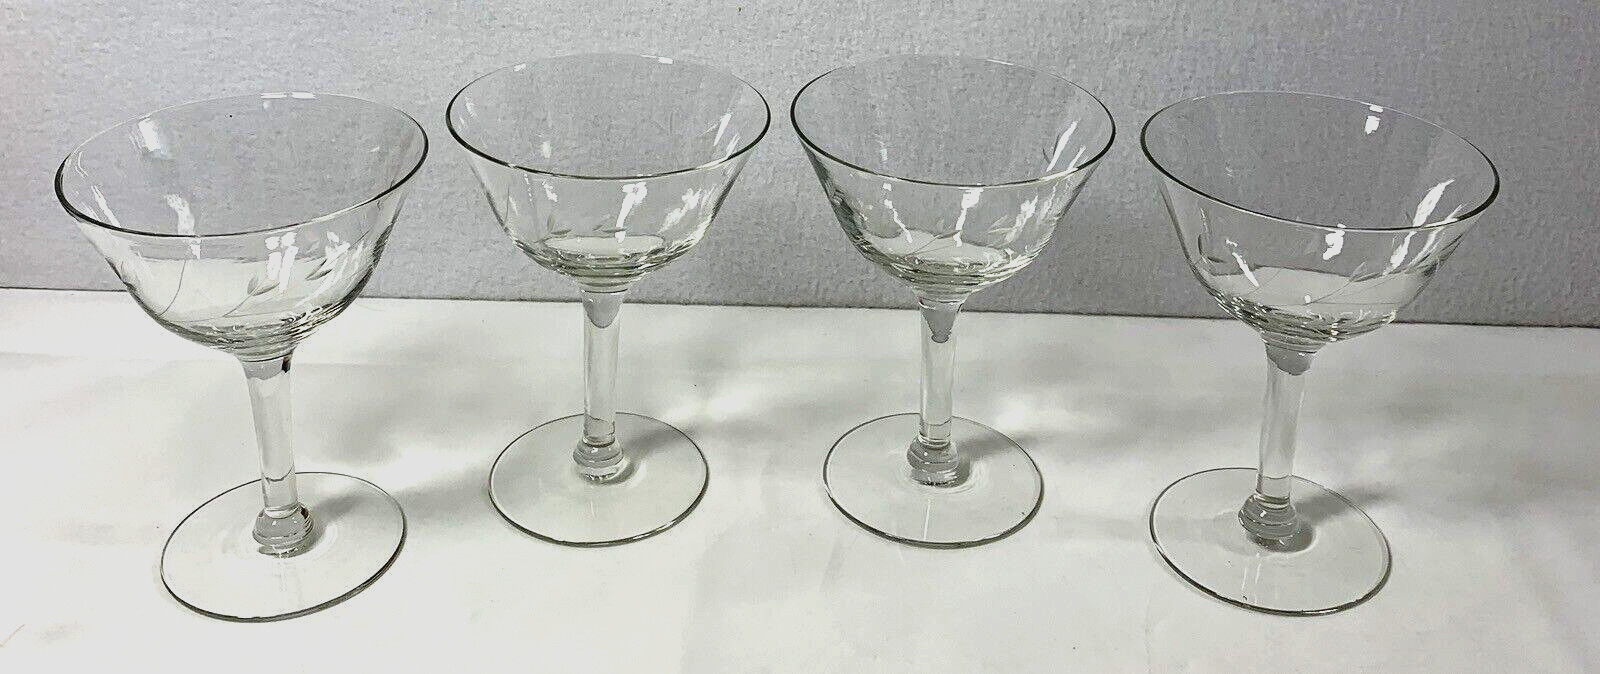 Vintage Glassware 4 Vine Leaf Design Champagne Pedestal Glasses Wedding Party #1